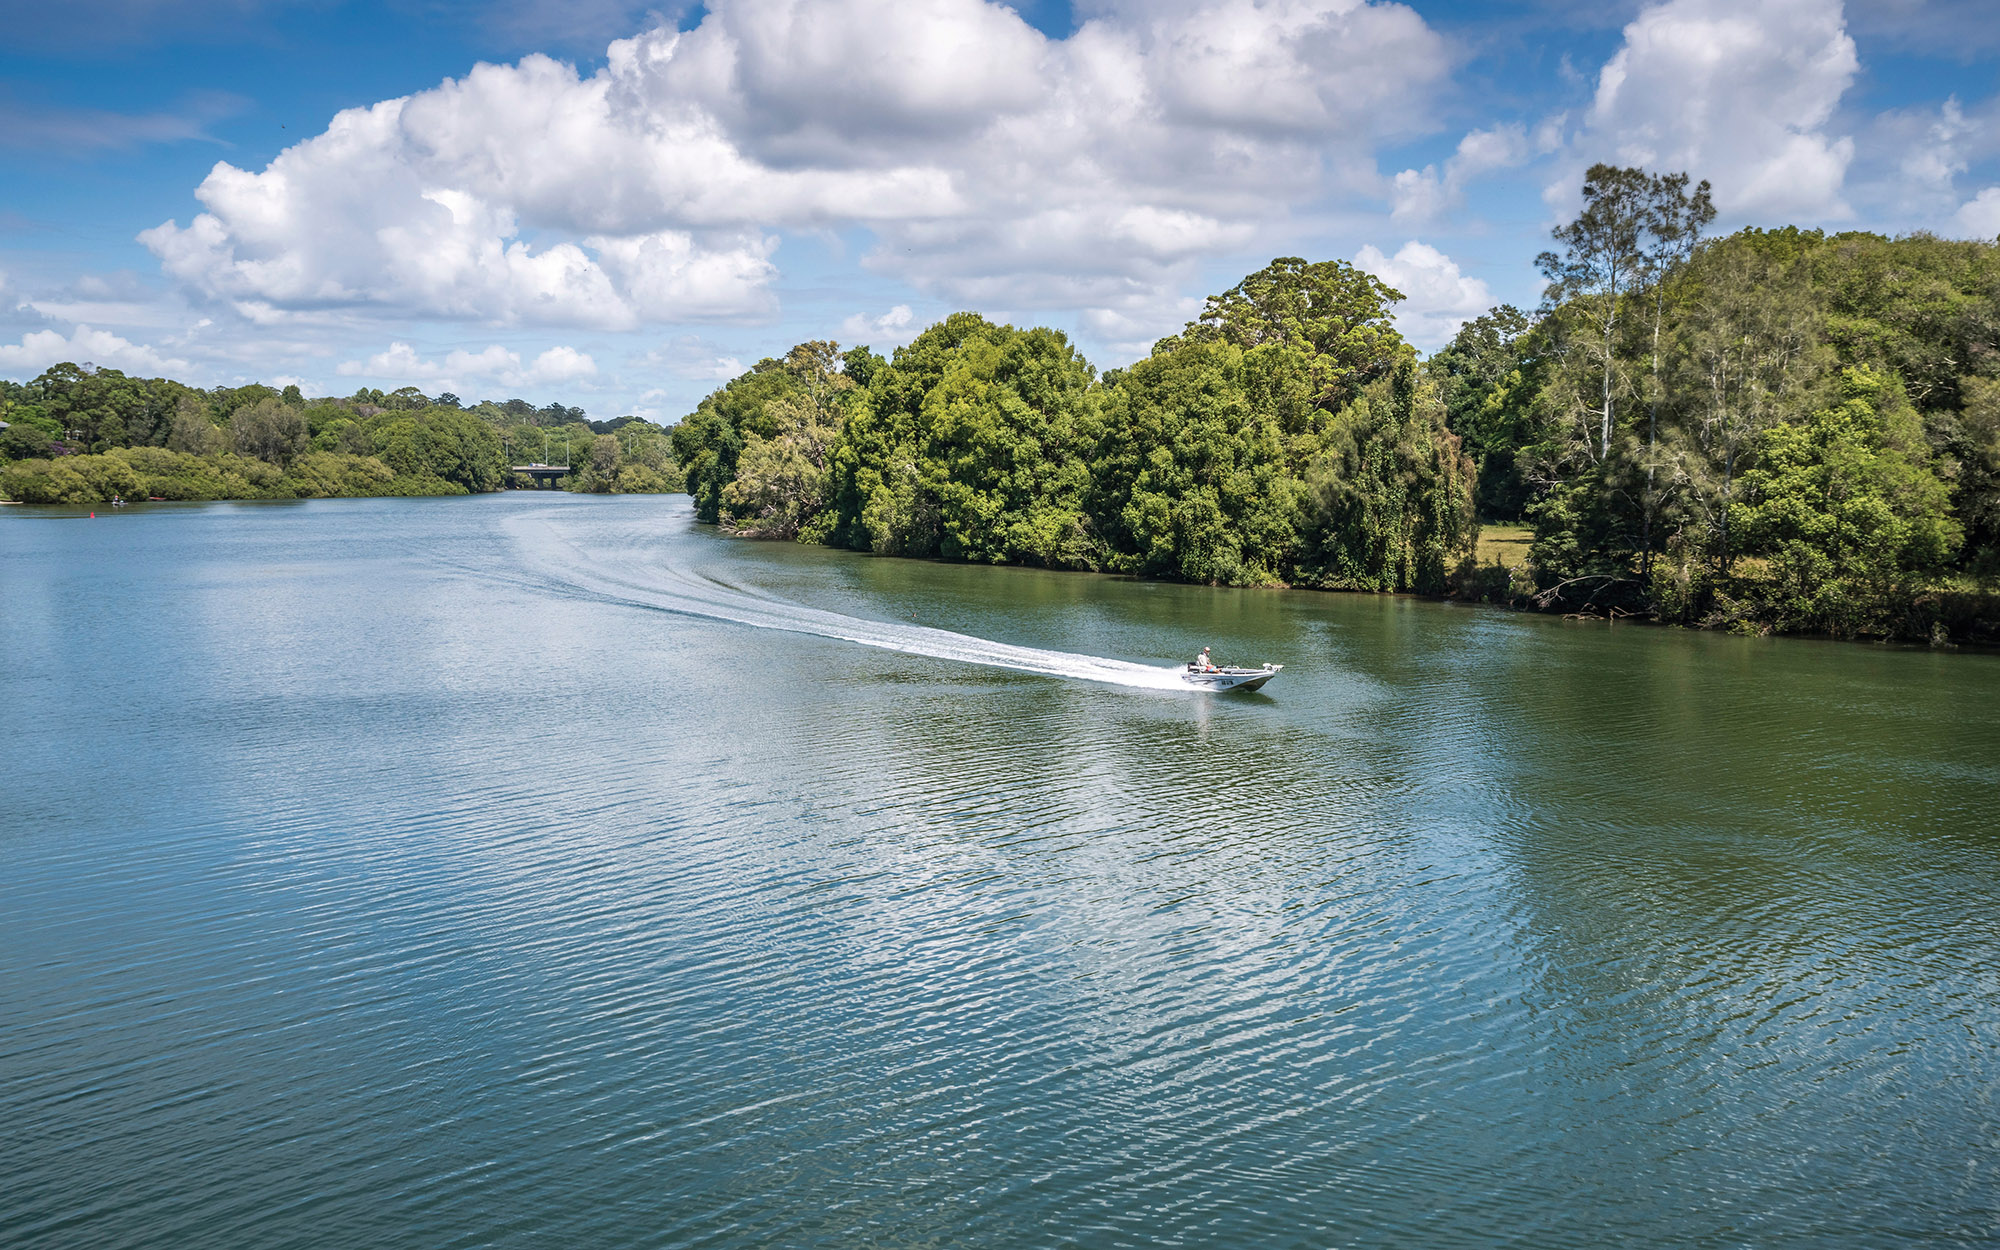 A boat on Bellinger River Bellingen NSW - Image credit:Jaime Plaza Van Roon